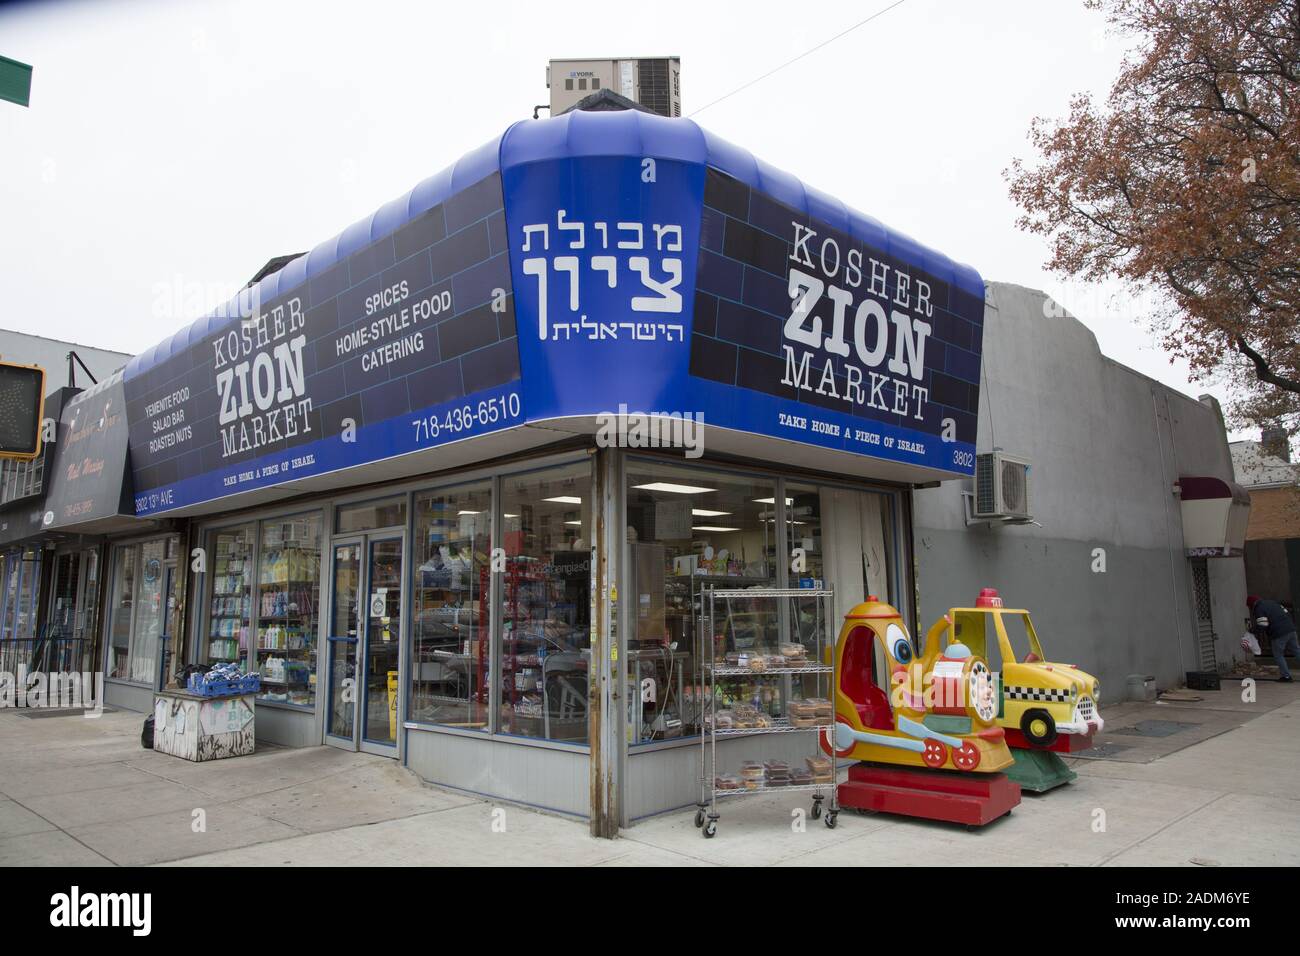 13 Avenue im Borough Park Brooklyn ist überwiegend eine orthodoxe jüdische Viertel mit vielen Zeichen im Hebräischen sowie in Englisch. Stockfoto